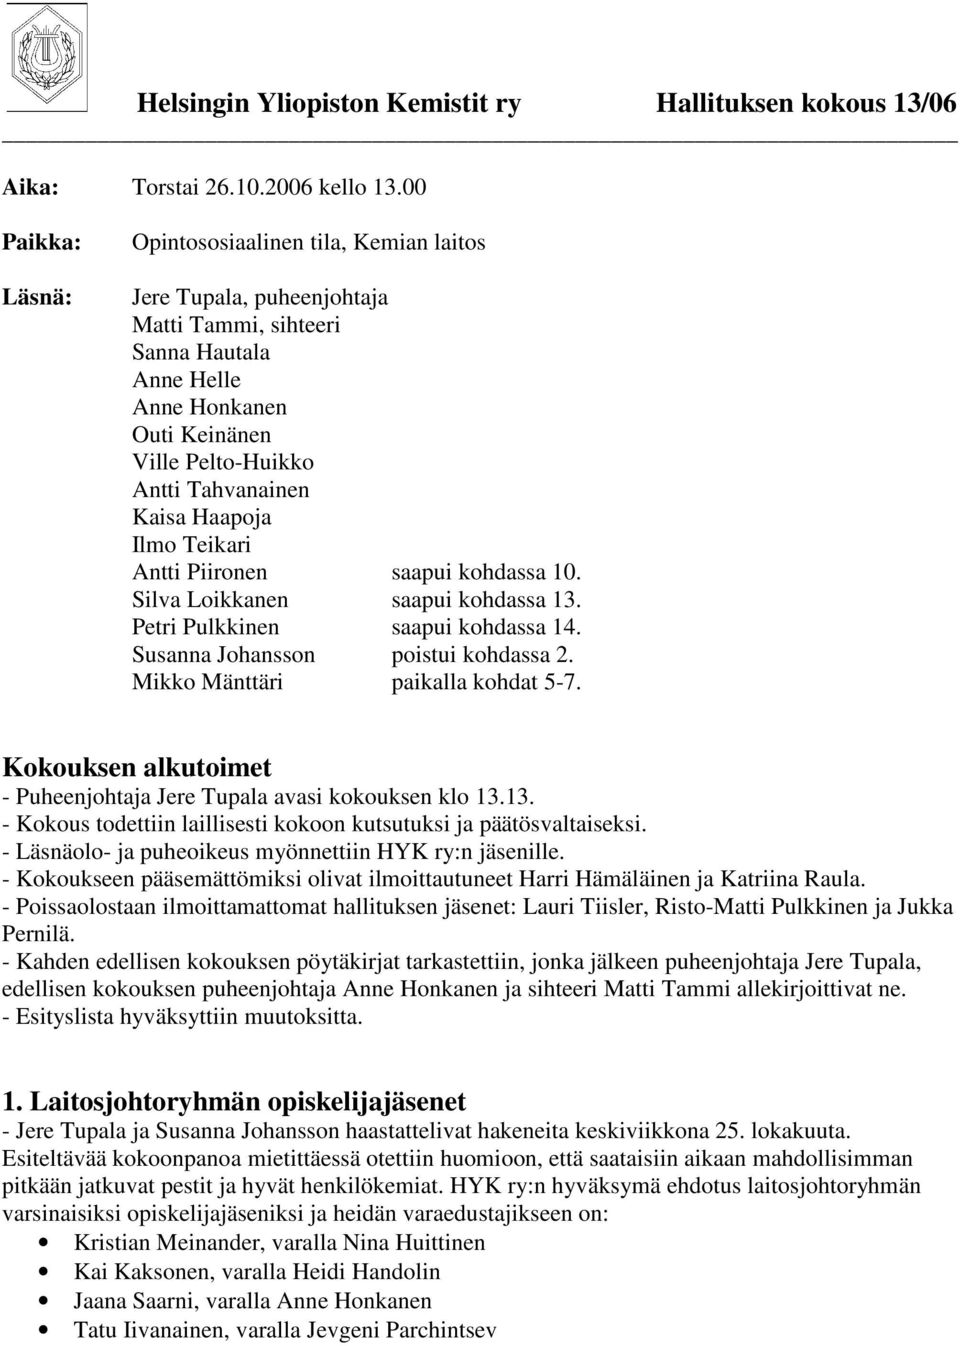 Kaisa Haapoja Ilmo Teikari Antti Piironen saapui kohdassa 10. Silva Loikkanen saapui kohdassa 13. Petri Pulkkinen saapui kohdassa 14. Susanna Johansson poistui kohdassa 2.